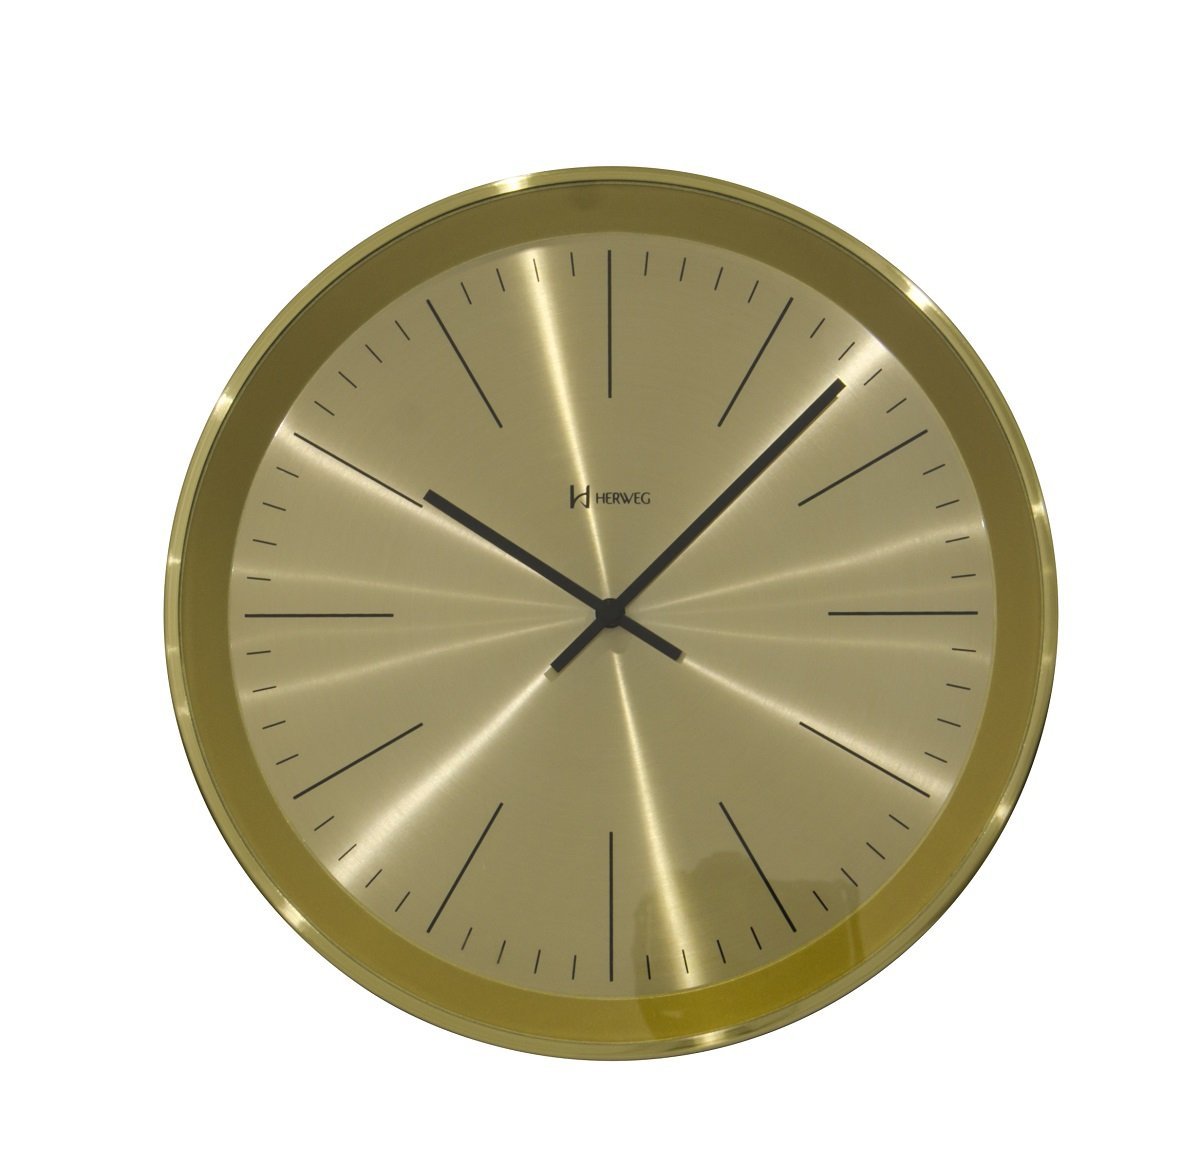 Relógio Parede Clássico Metalizado - Analógico - Dourado Claro - Herweg